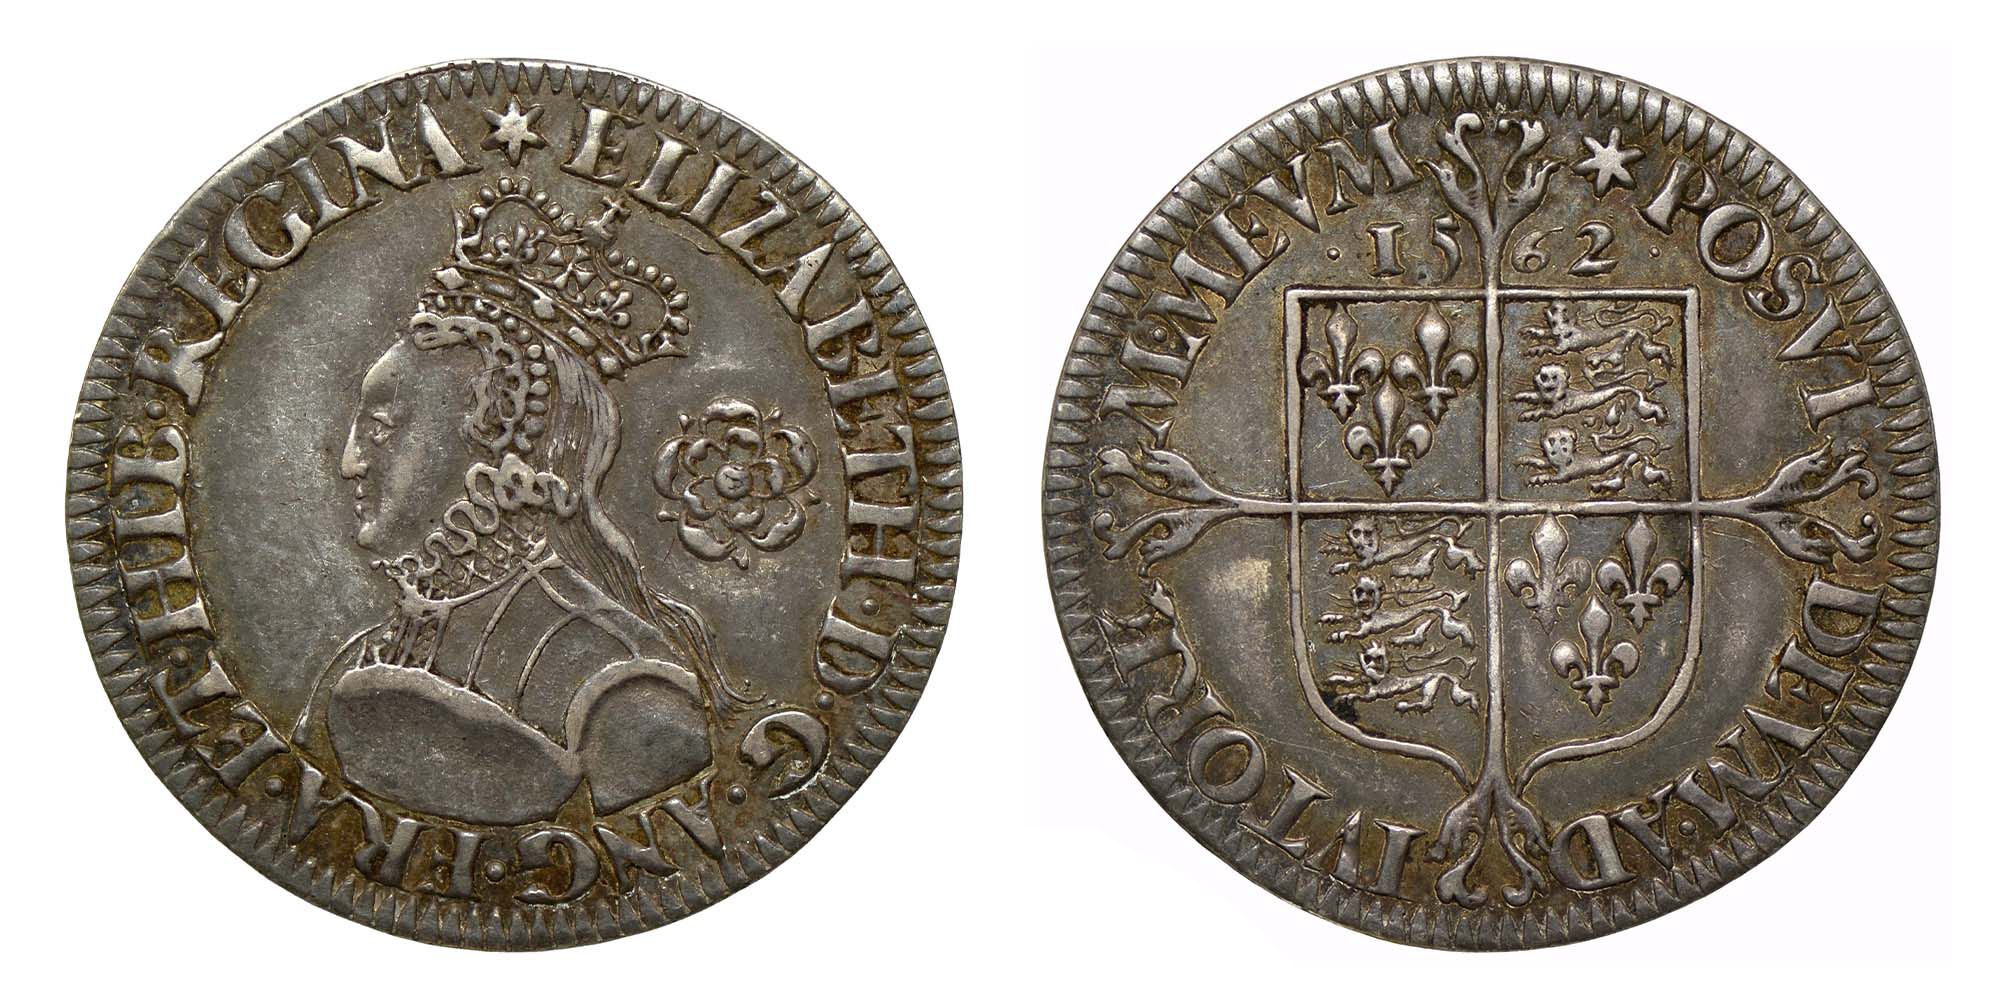 Elizabeth I Silver Sixpence 1562